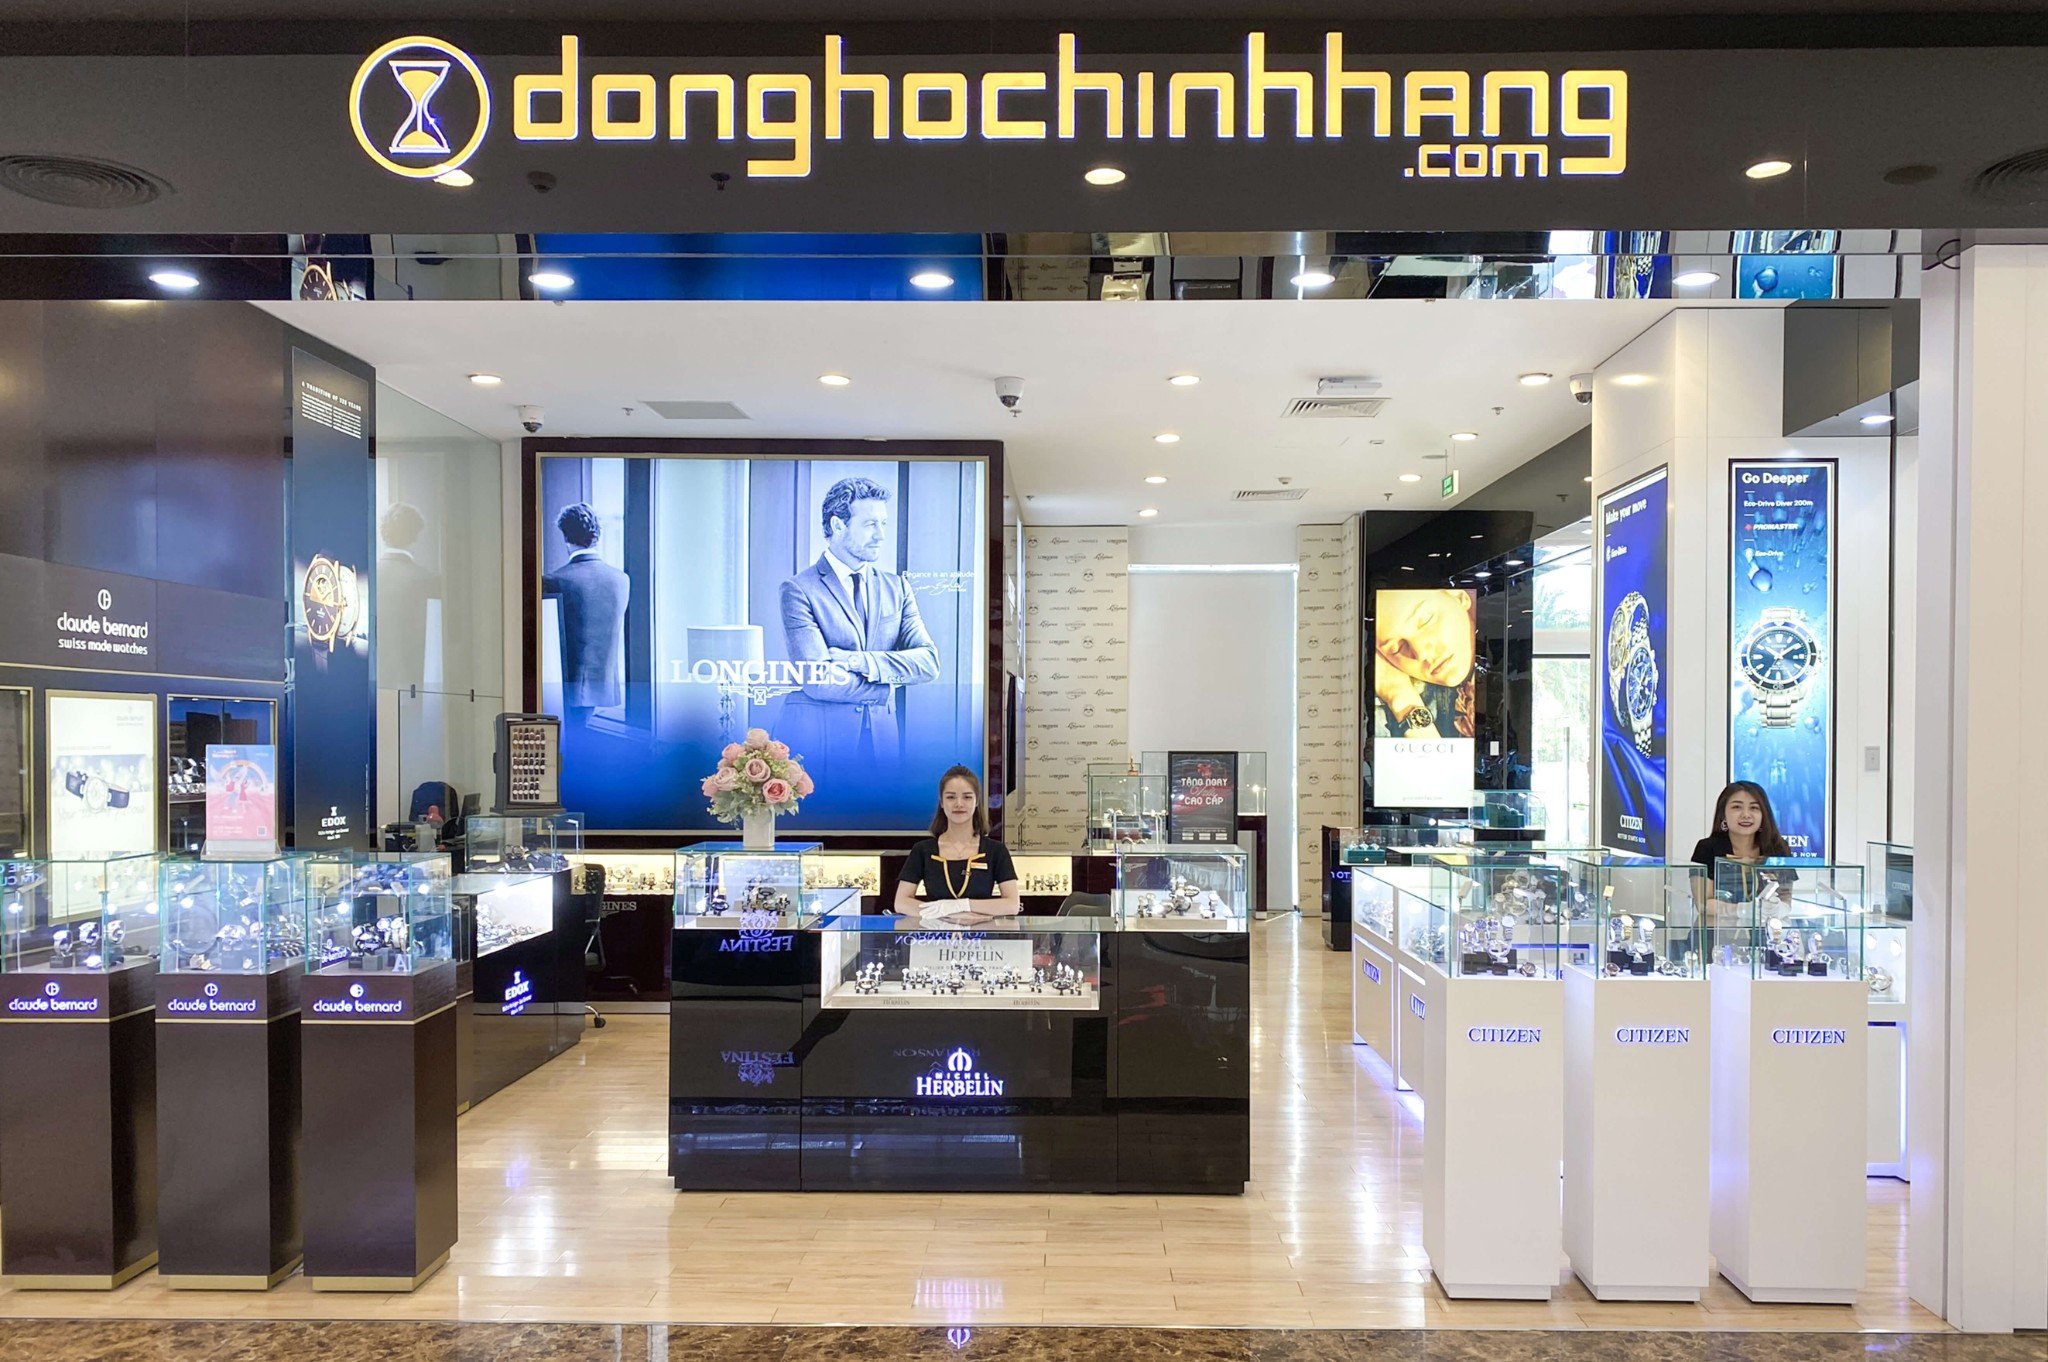 Showroom Donghochinhhang.com – Vincom Plaza Imperia Hải Phòng